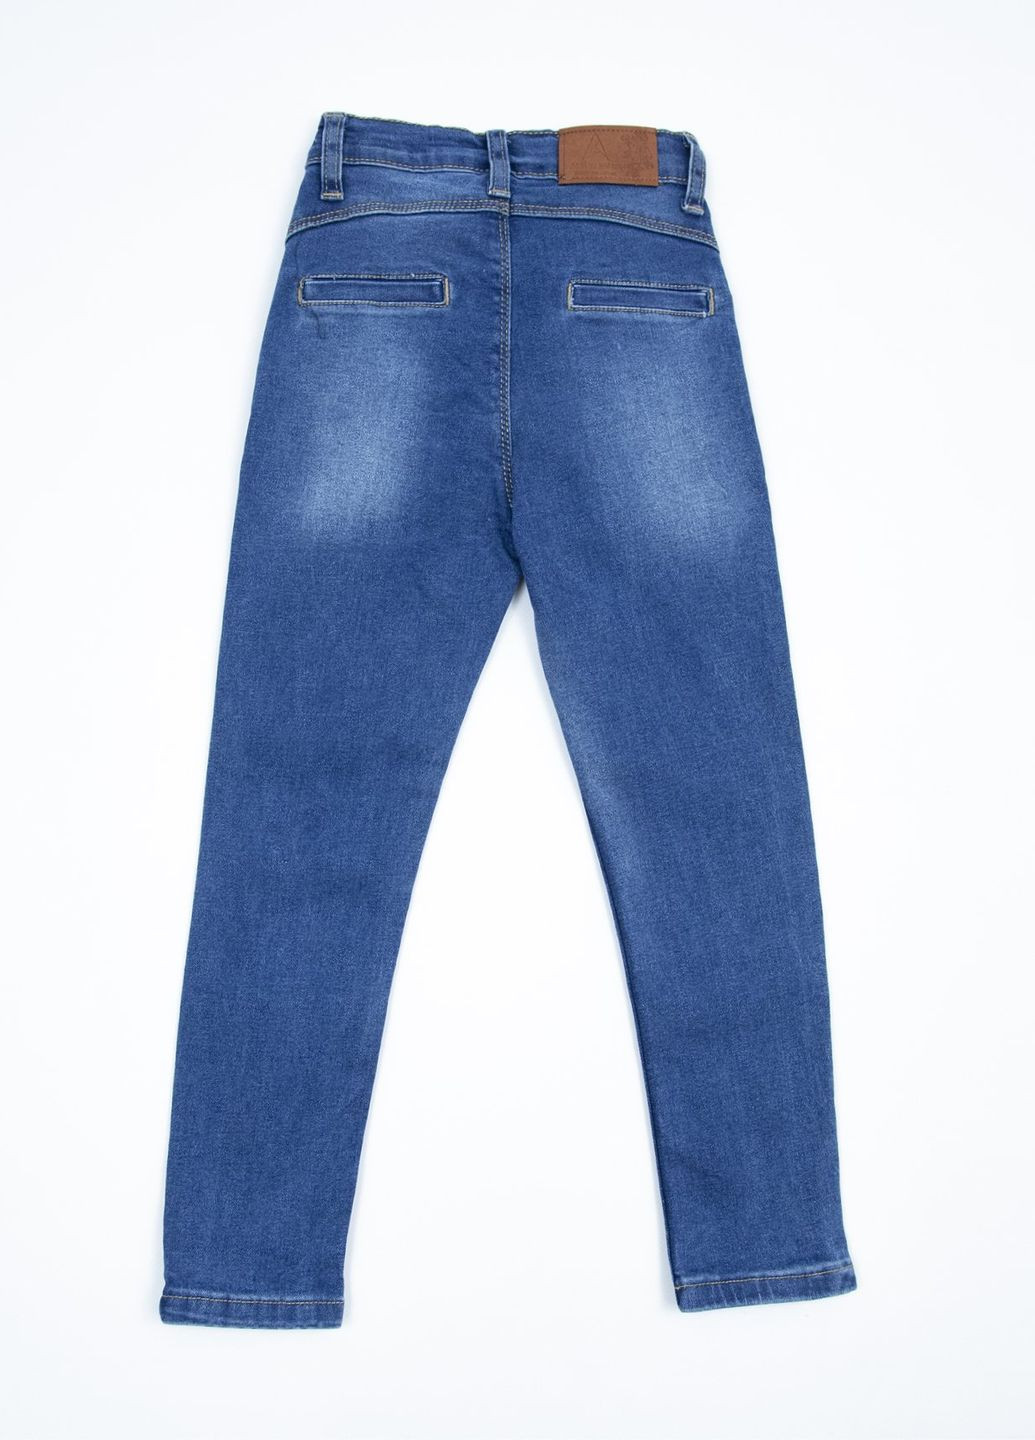 Синие демисезонные зауженные джинсы для девочек зауженные синие с кокеткой Altun